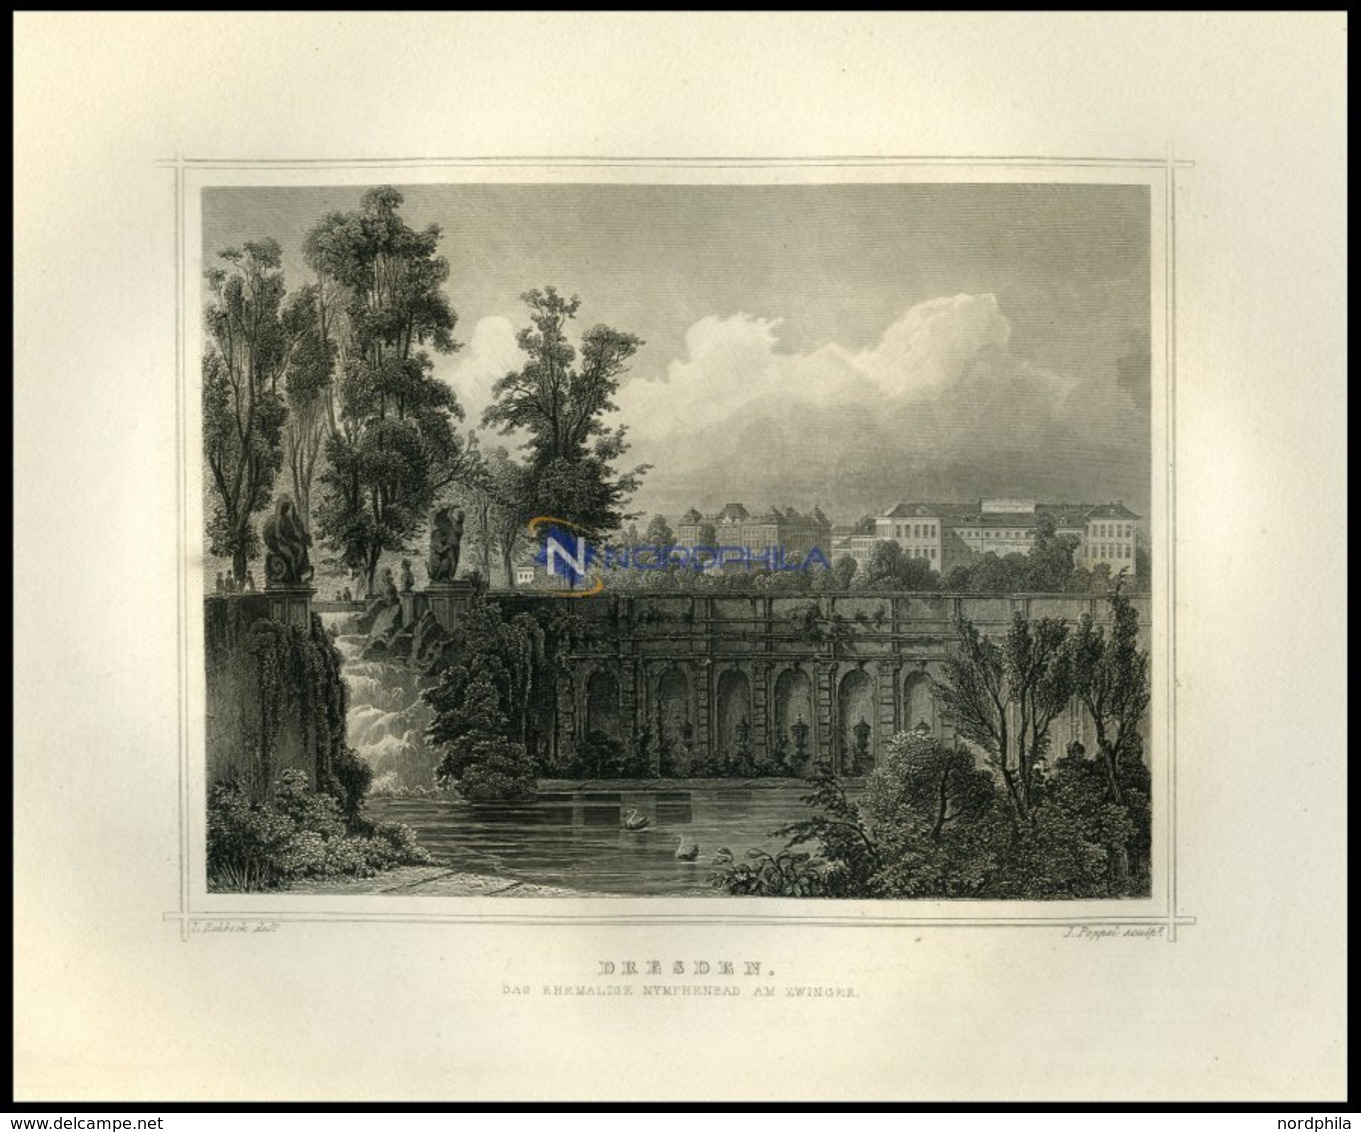 DRESDEN: Das Ehemalige Nymphenbad Am Zwinger, Stahlstich Von Rohbock/Poppel Um 1850 - Lithographien